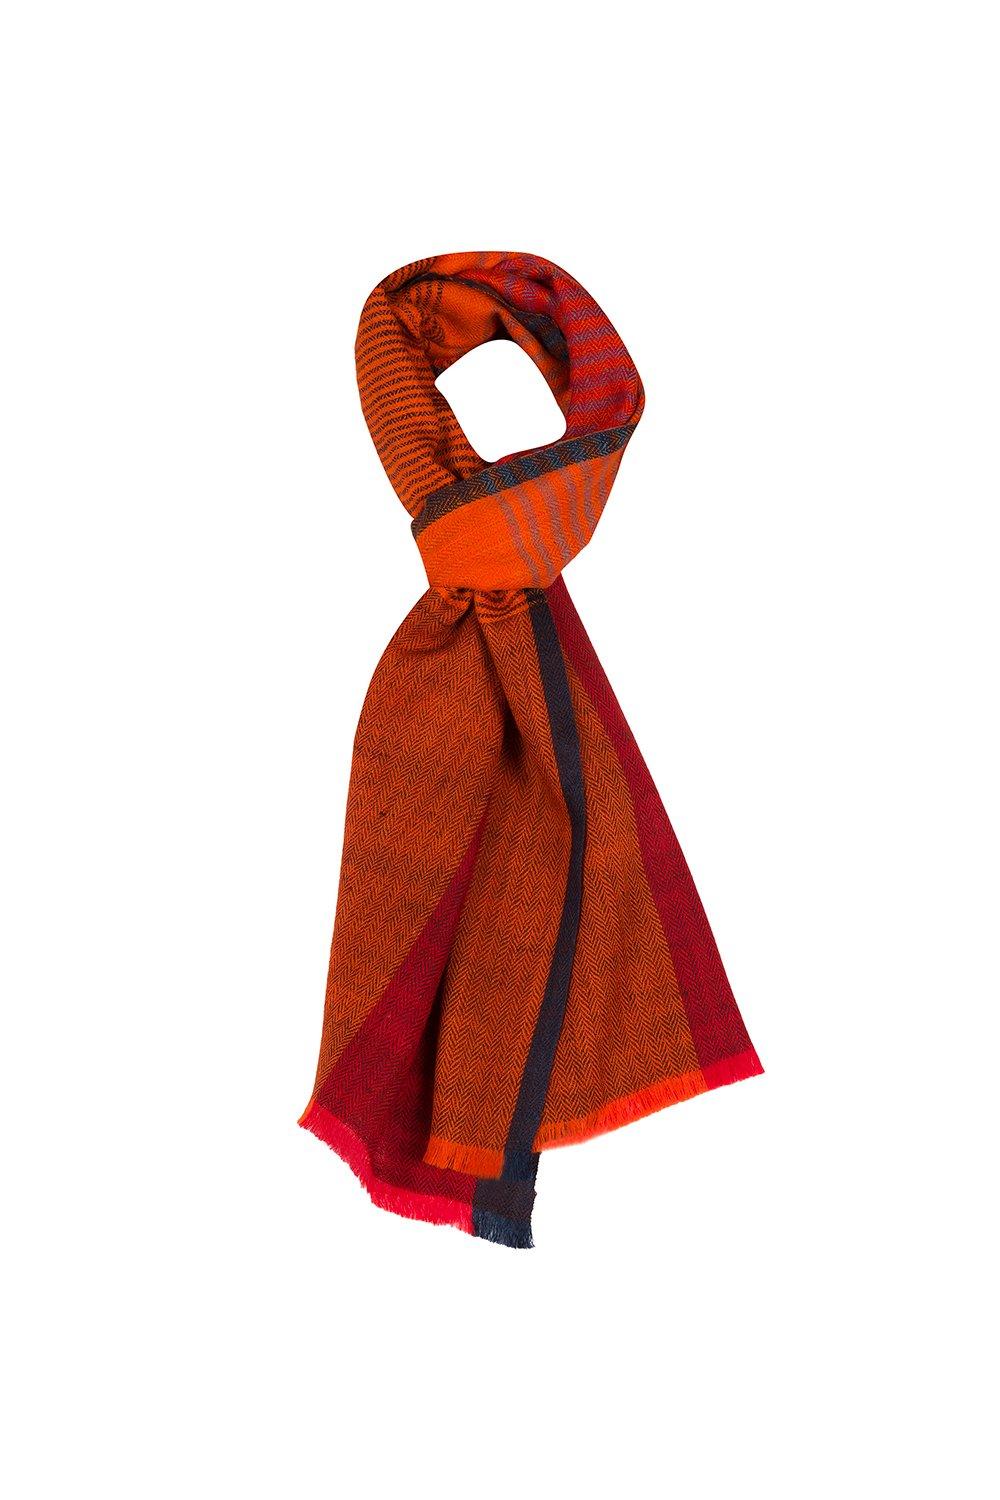 Шейный платок 'Libration' из кашемира и шерсти мериноса Pure Luxuries London, оранжевый